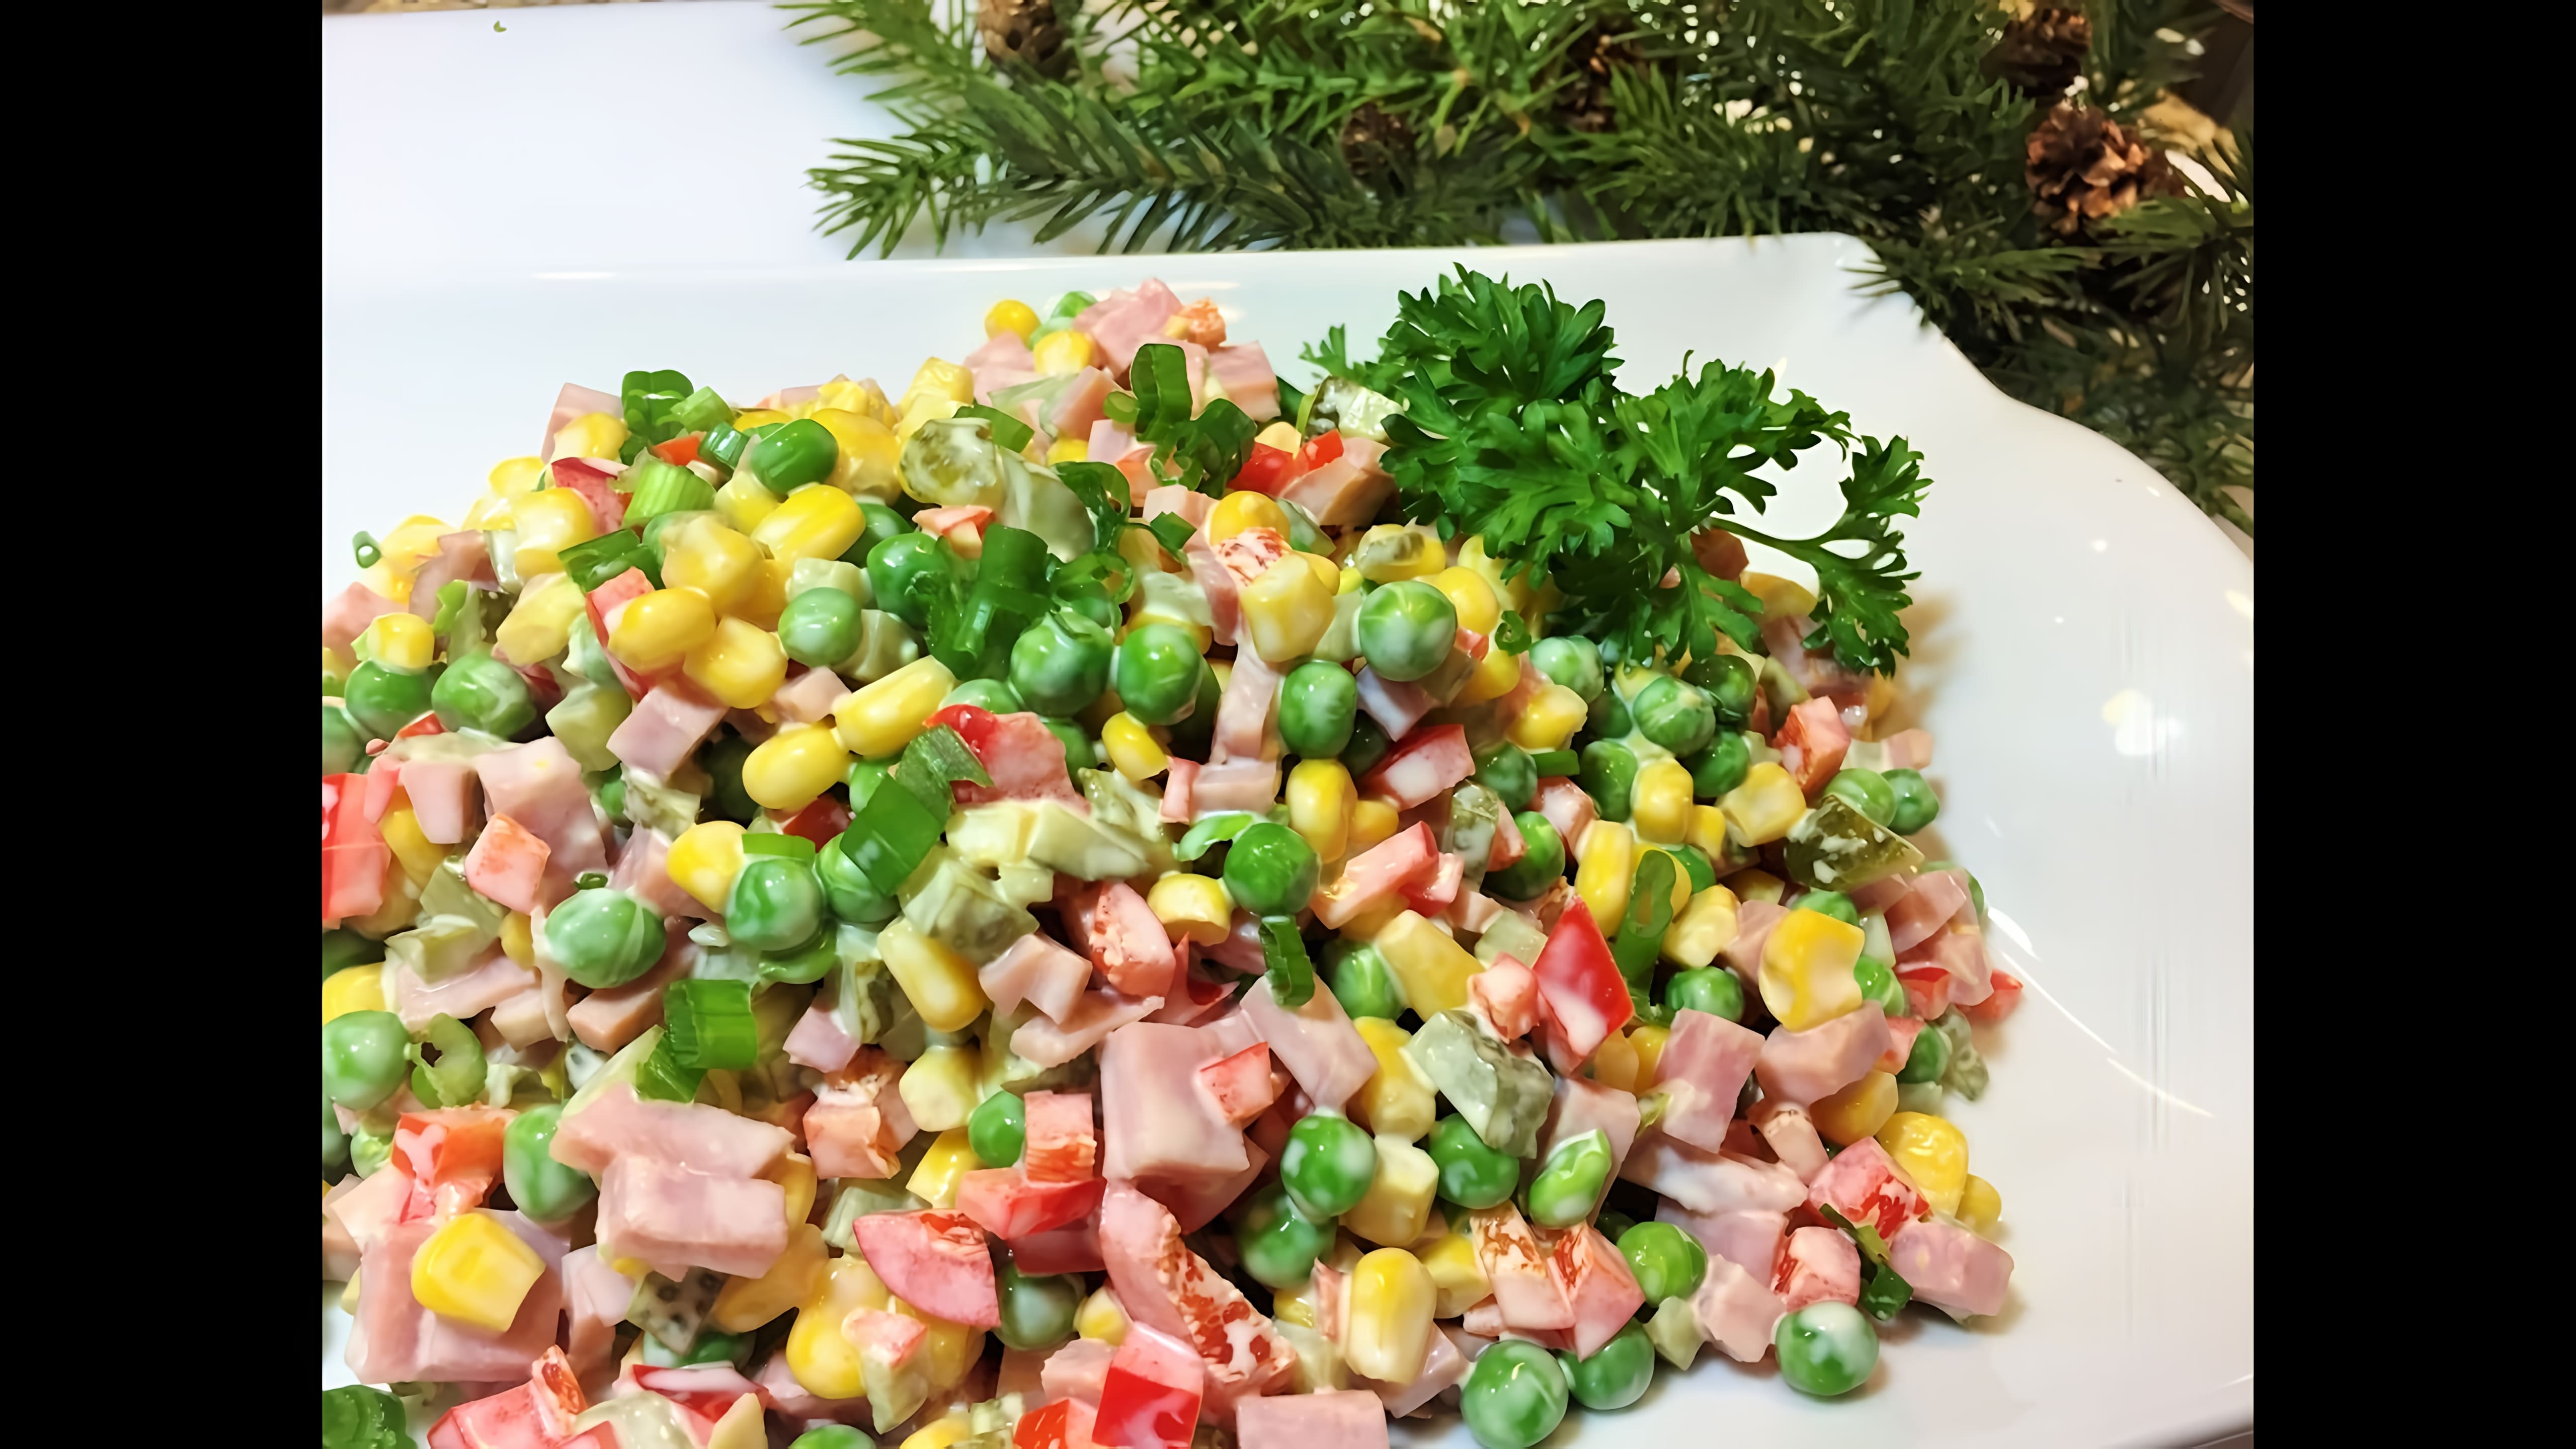 Видео: Праздничный  Салат  КРУИЗ.  Вкусный, яркий и бюджетный!   New Year’s salad.